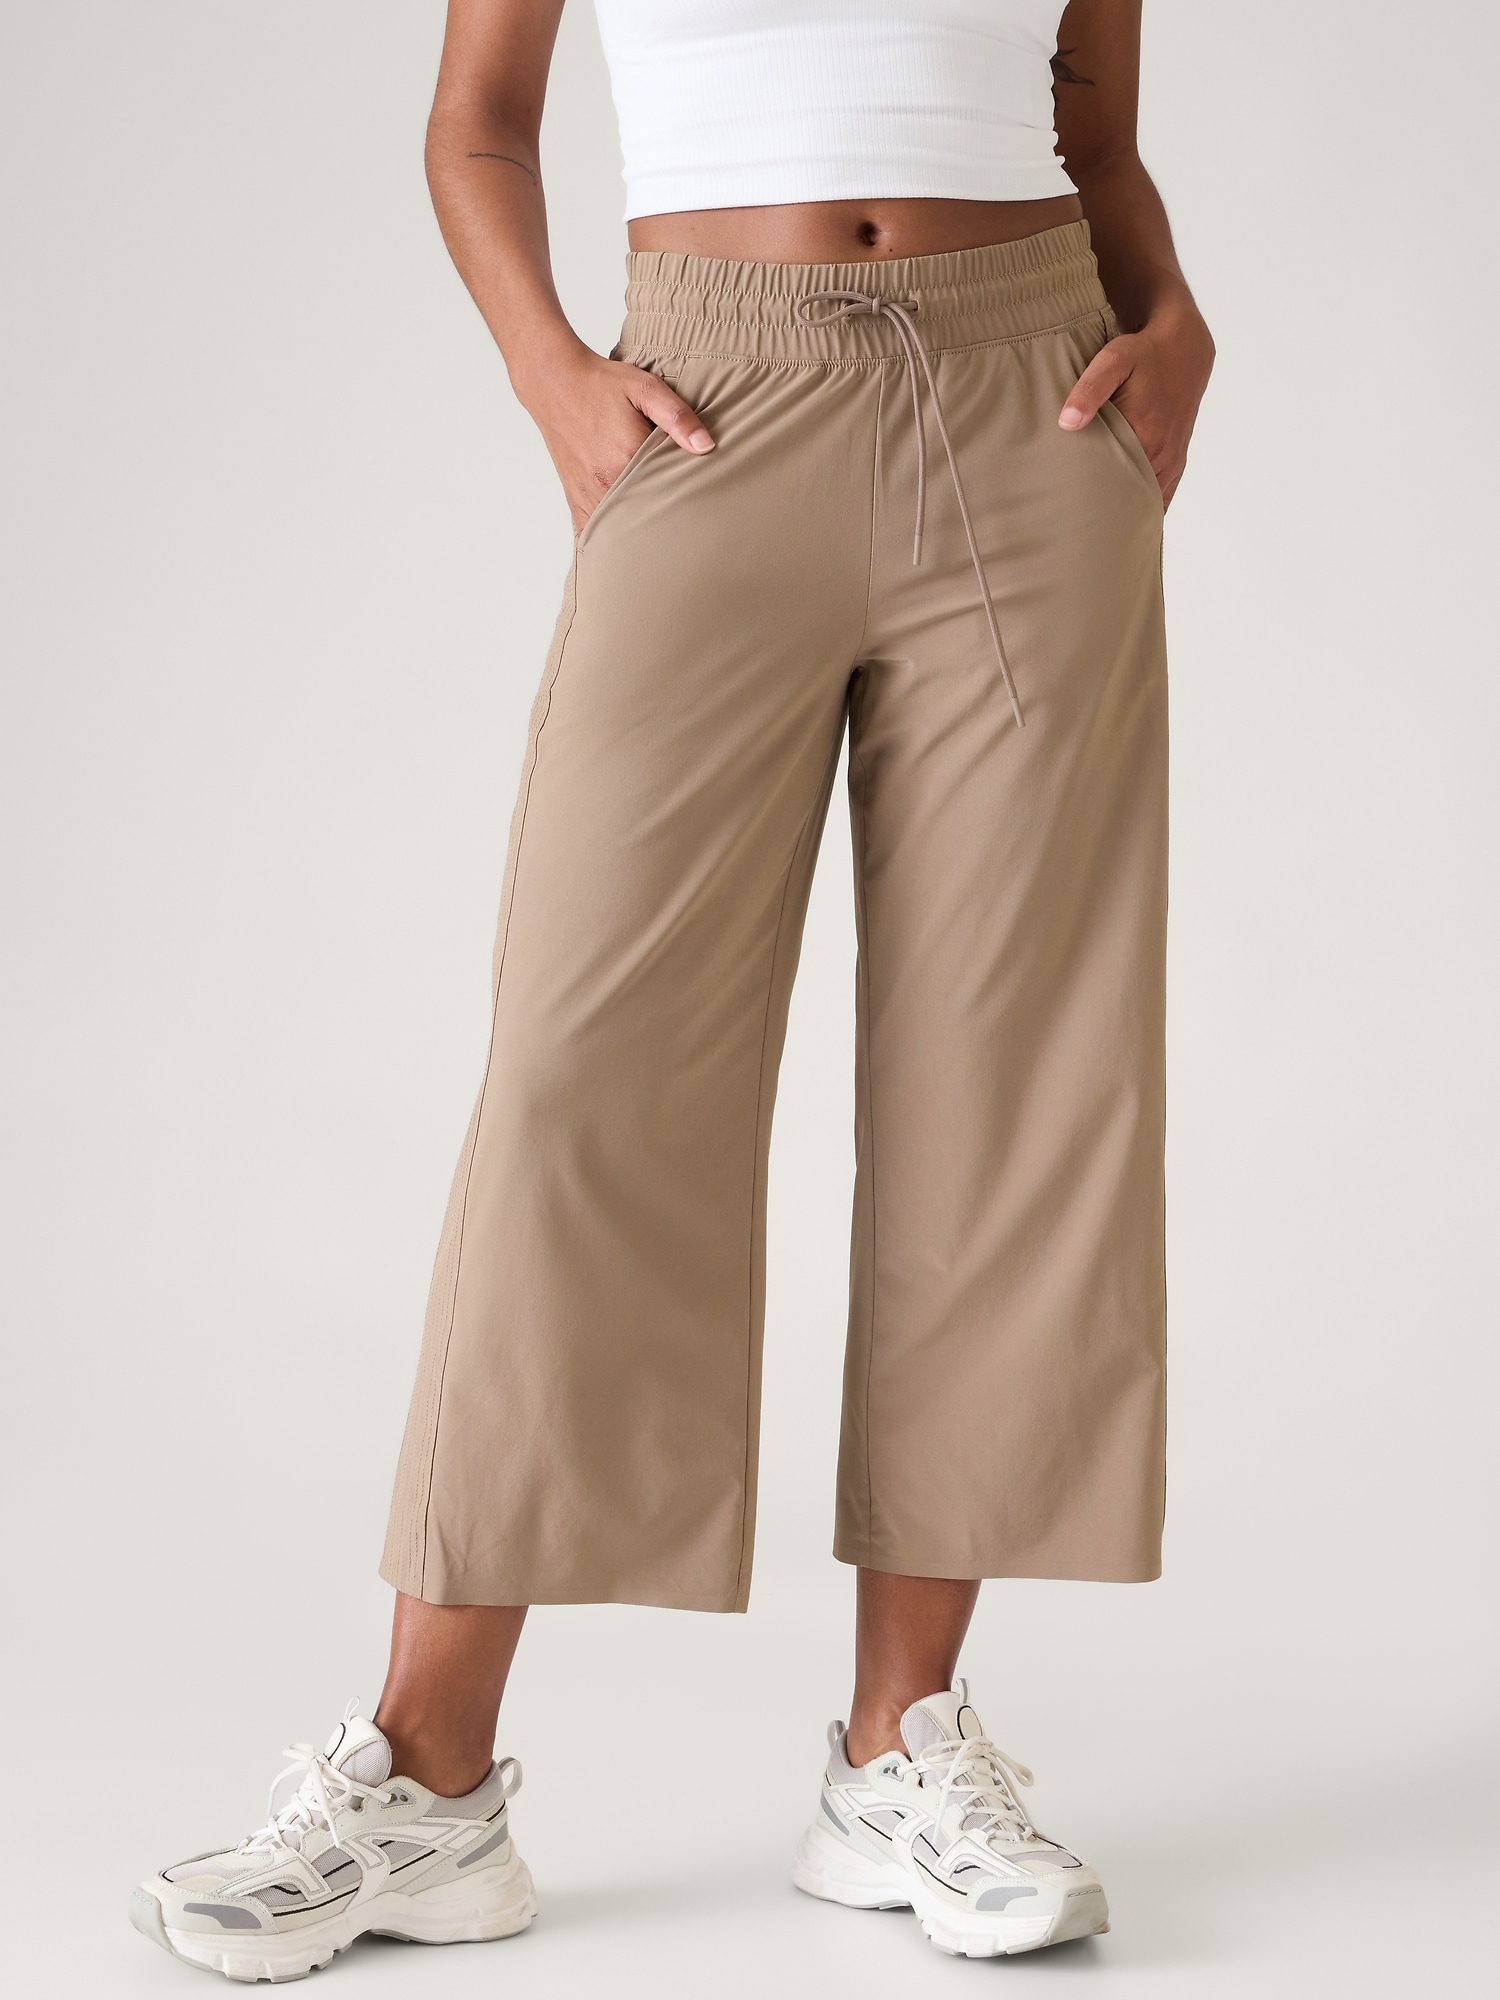 lululemon athletica Wide-Leg Capri Pants for Women